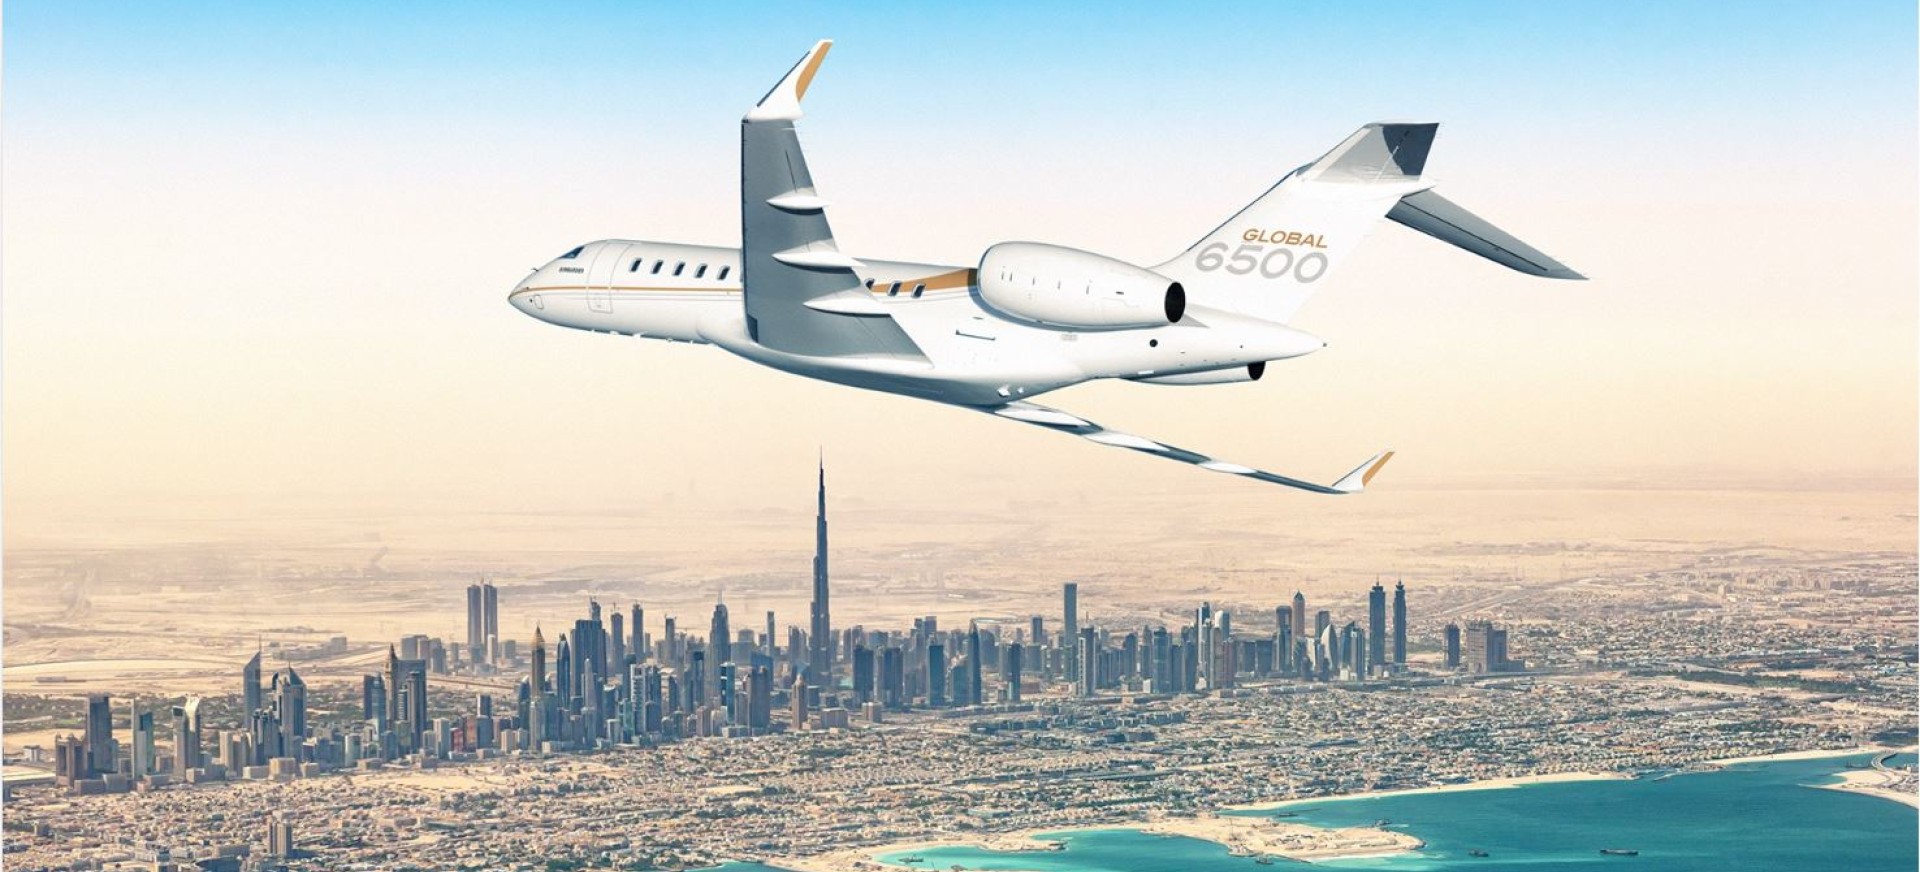 Private plane over Dubai